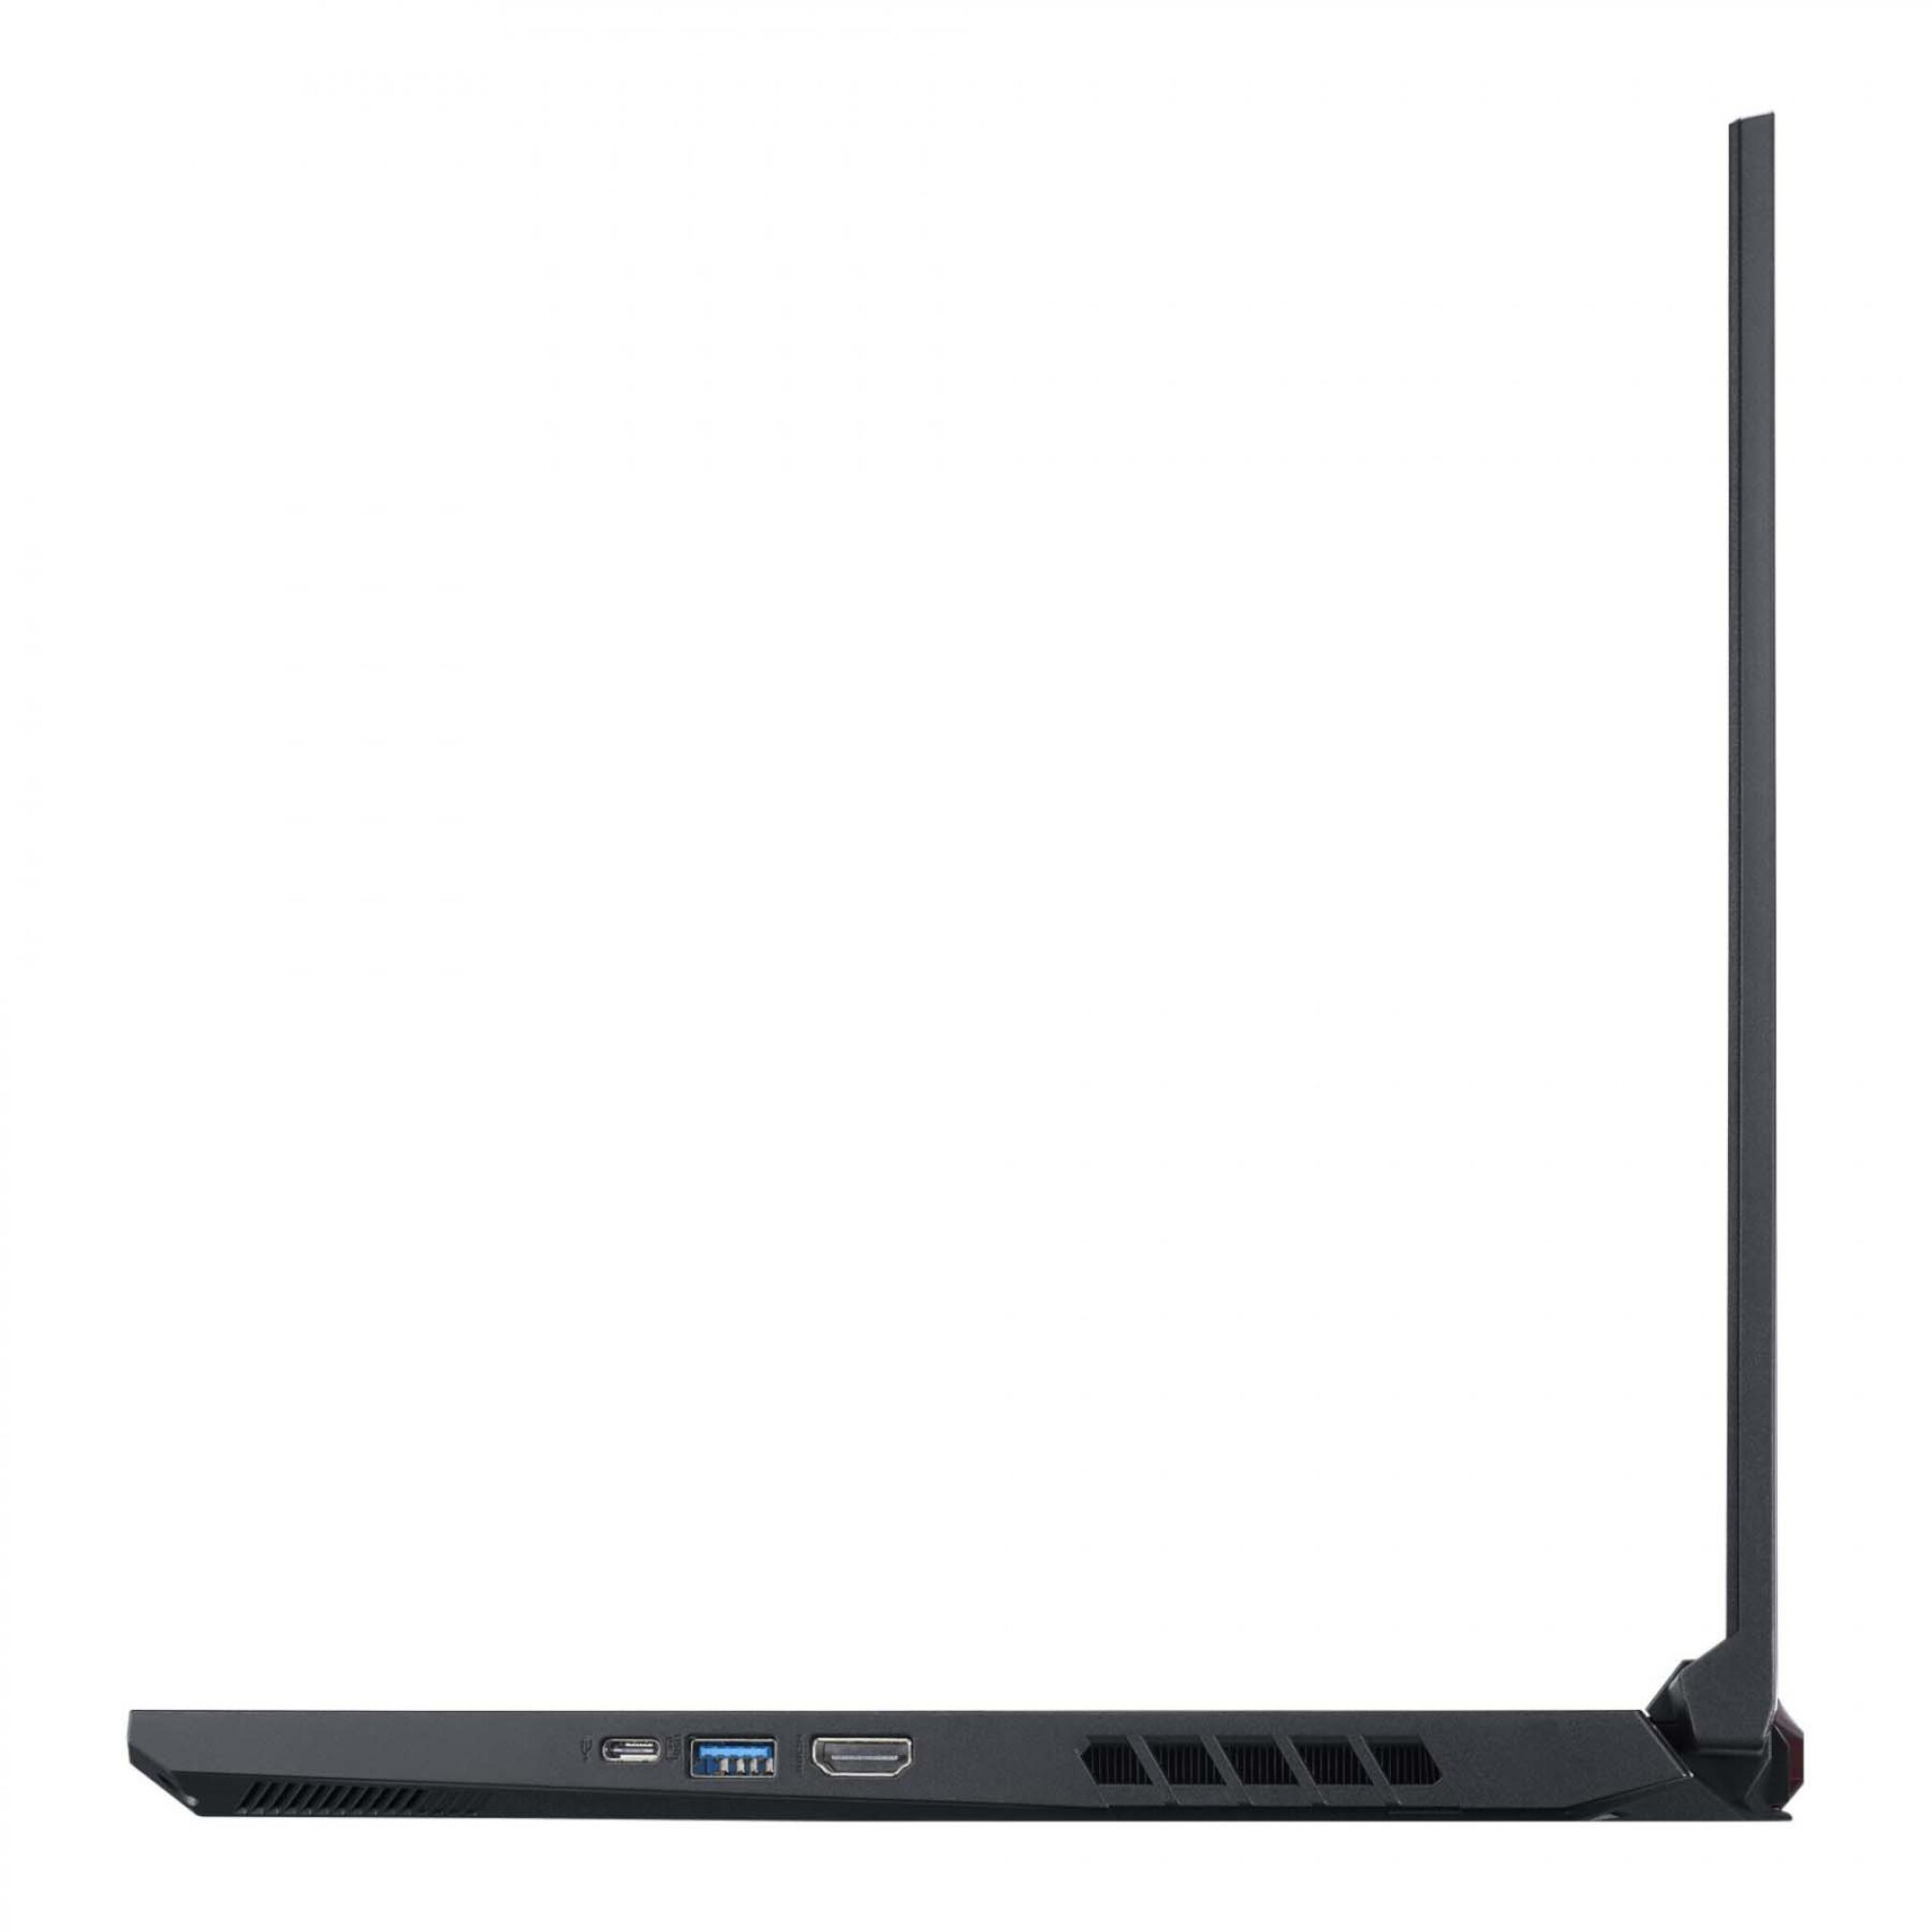  لپ تاپ Acer Nitro 5 AN515-45-R5T9 ، گرافیک RTX 3060 | لاکچری لپ تاپ 